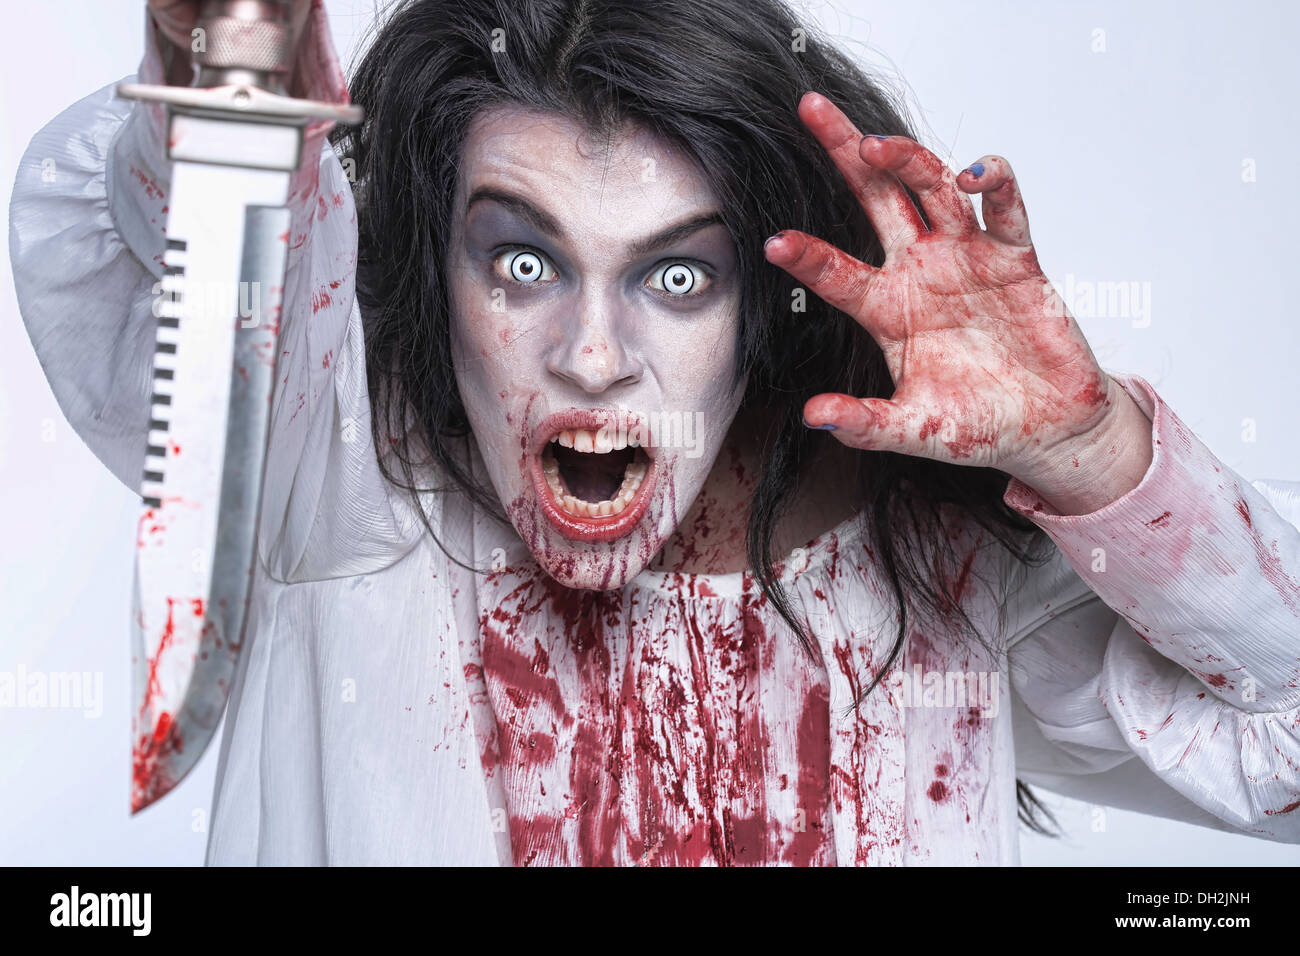 Orrore spaventoso Immagine di un sanguinamento donna psicotici con coltello Foto Stock